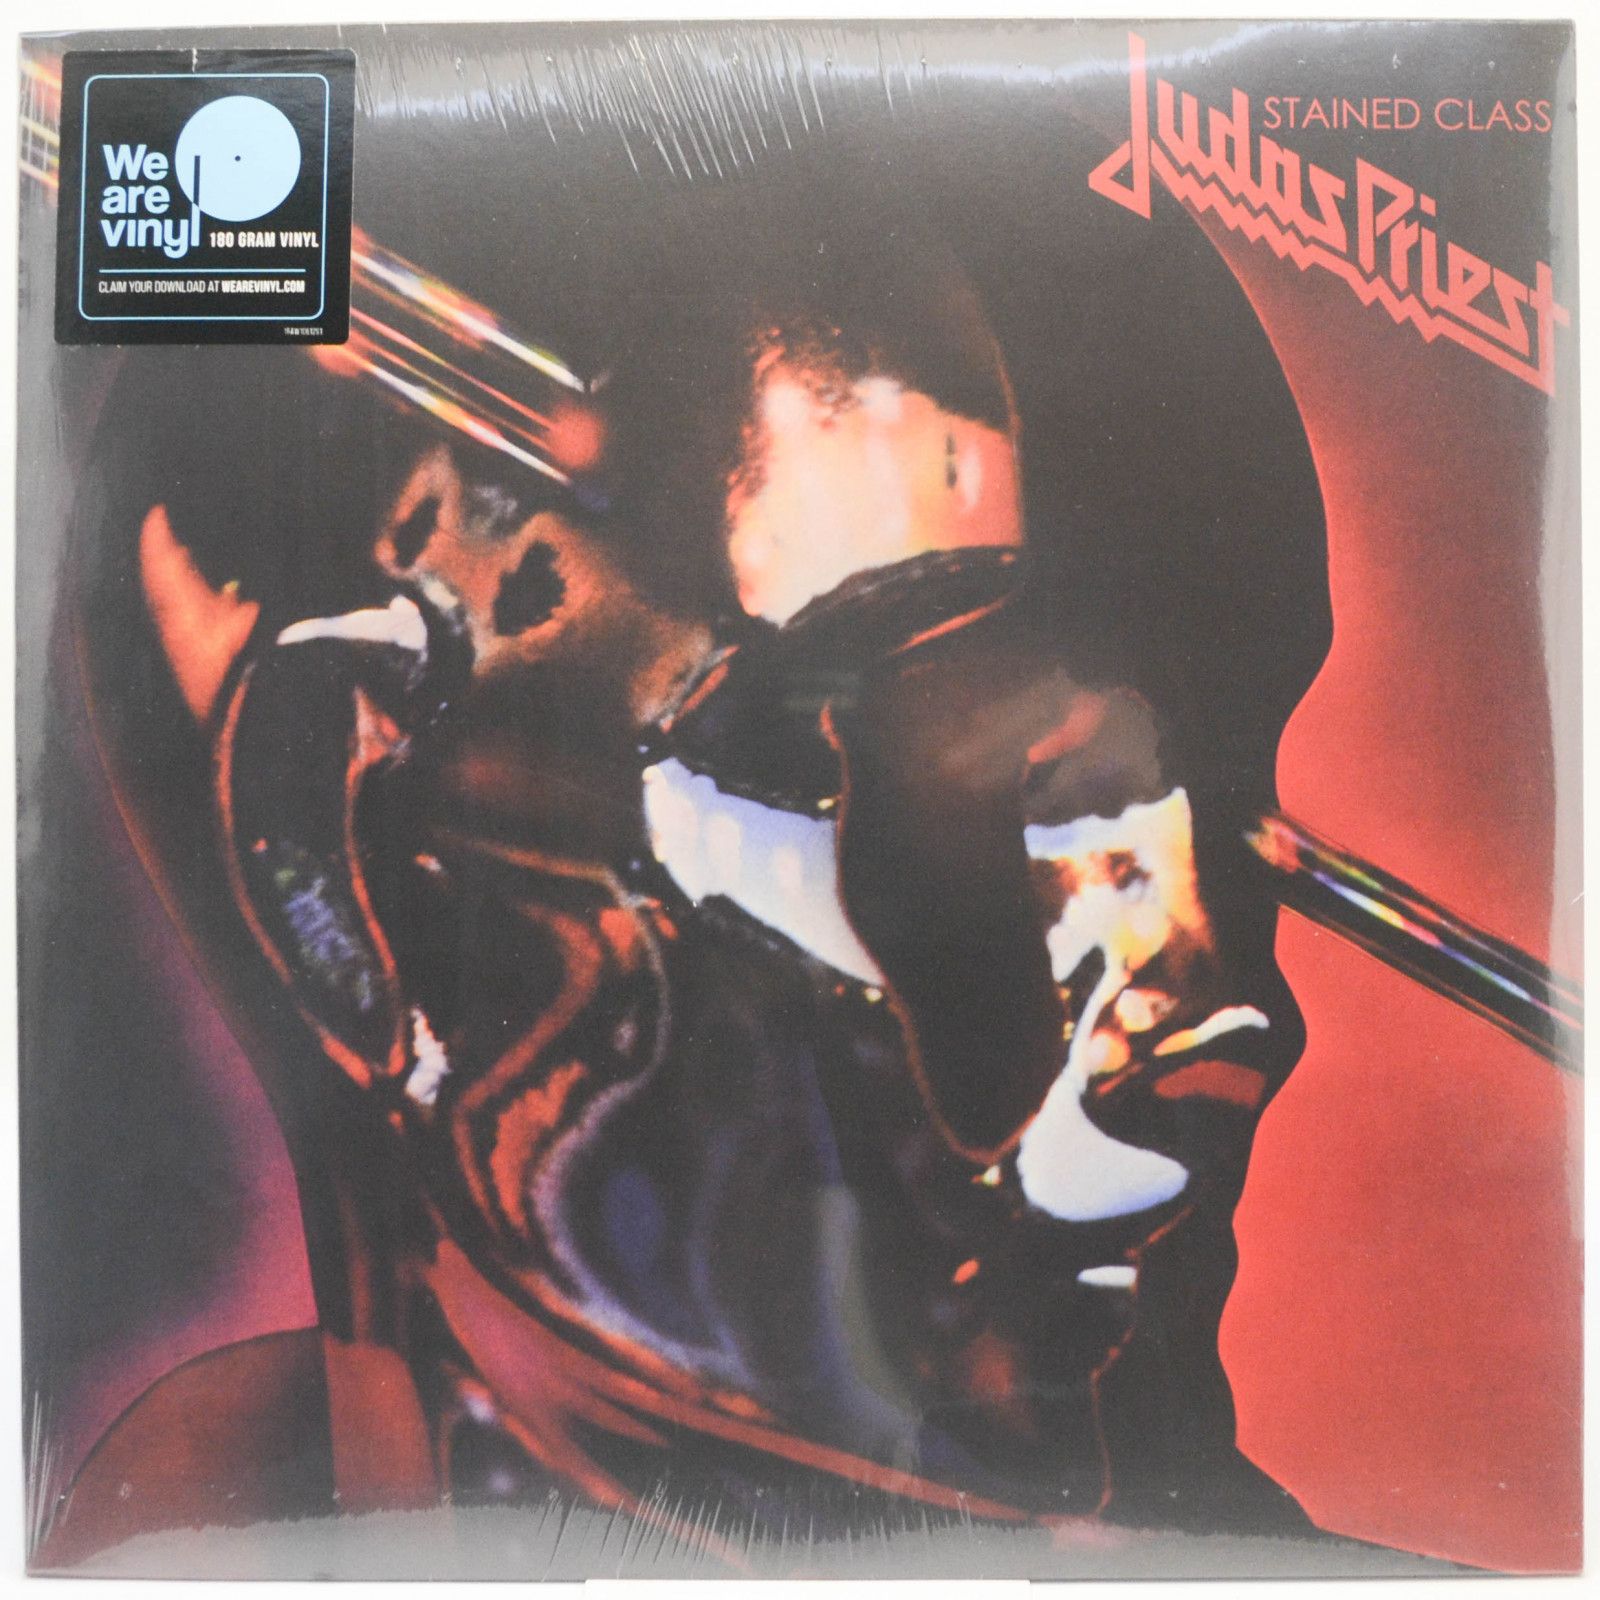 Judas Priest — Stained Class, 1978